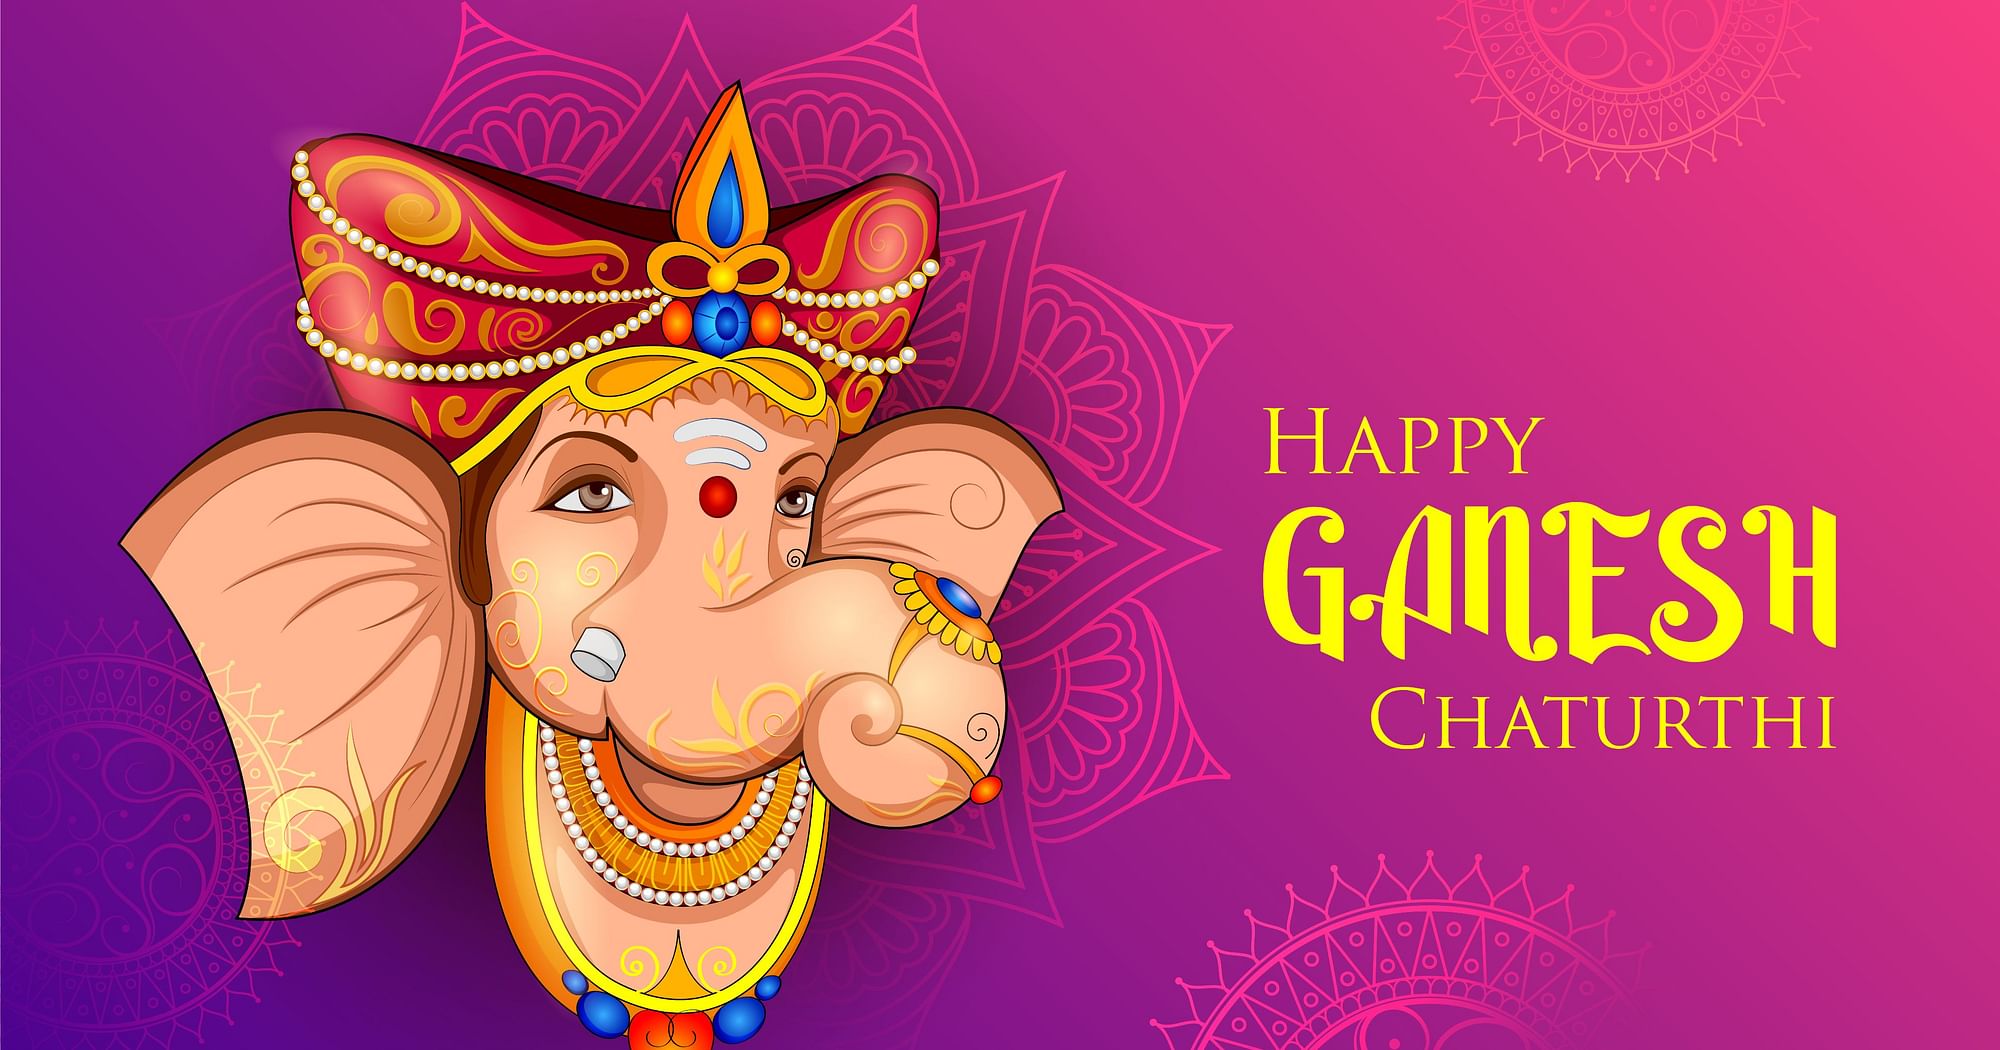 Ganesh Chaturthi 2020 Wishes In English Hindi Happy Ganesh Utsav Wishes Status Images 8702